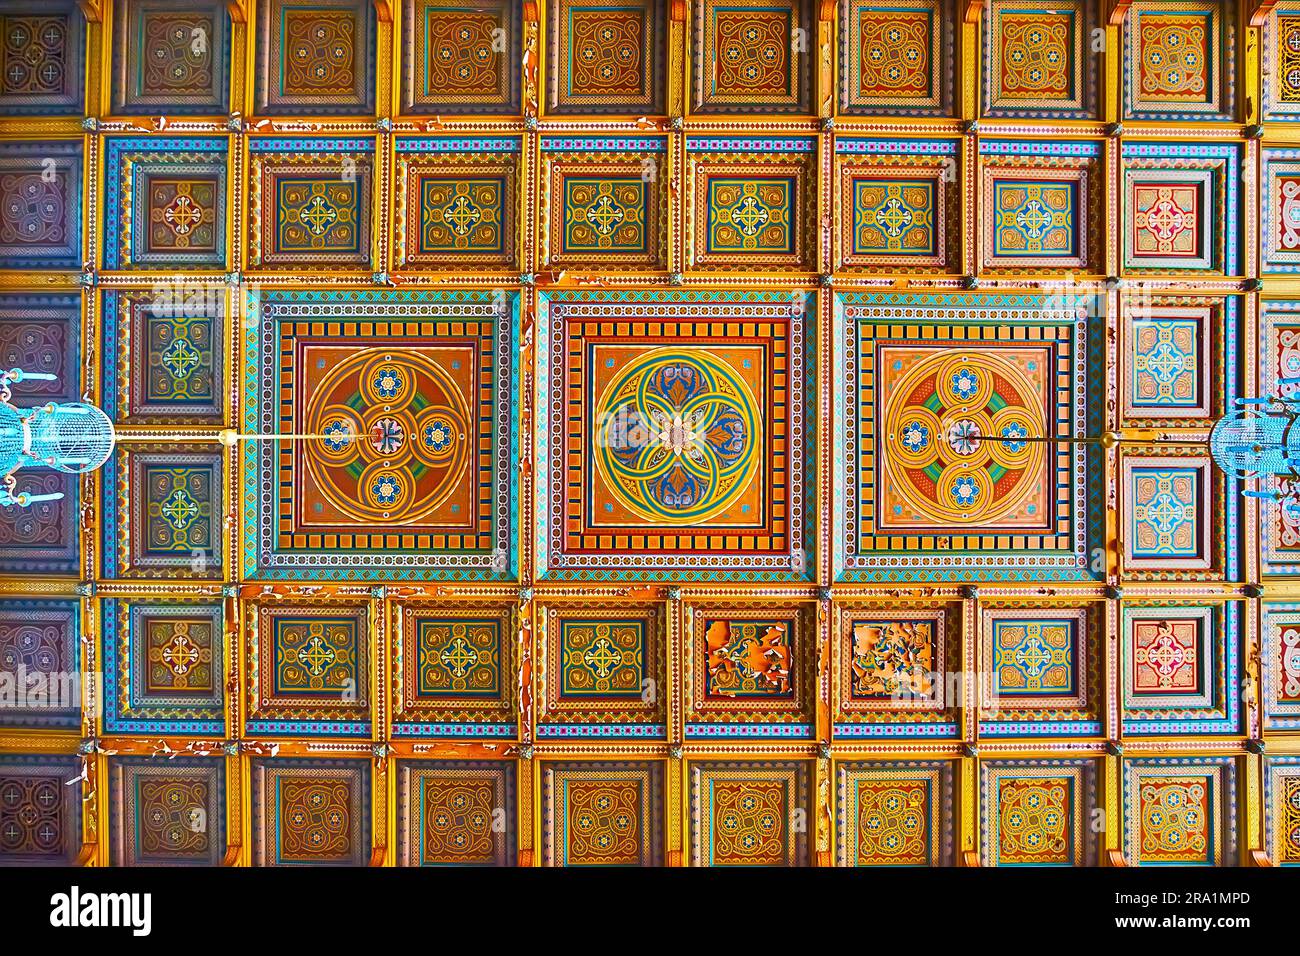 CHERNIVTSI, UCRAINA - 16 LUGLIO 2021: Il soffitto in legno intagliato nella sala di marmo dell'Università Nazionale di Chernivtsi con motivi geometrici colorati, su Ju Foto Stock